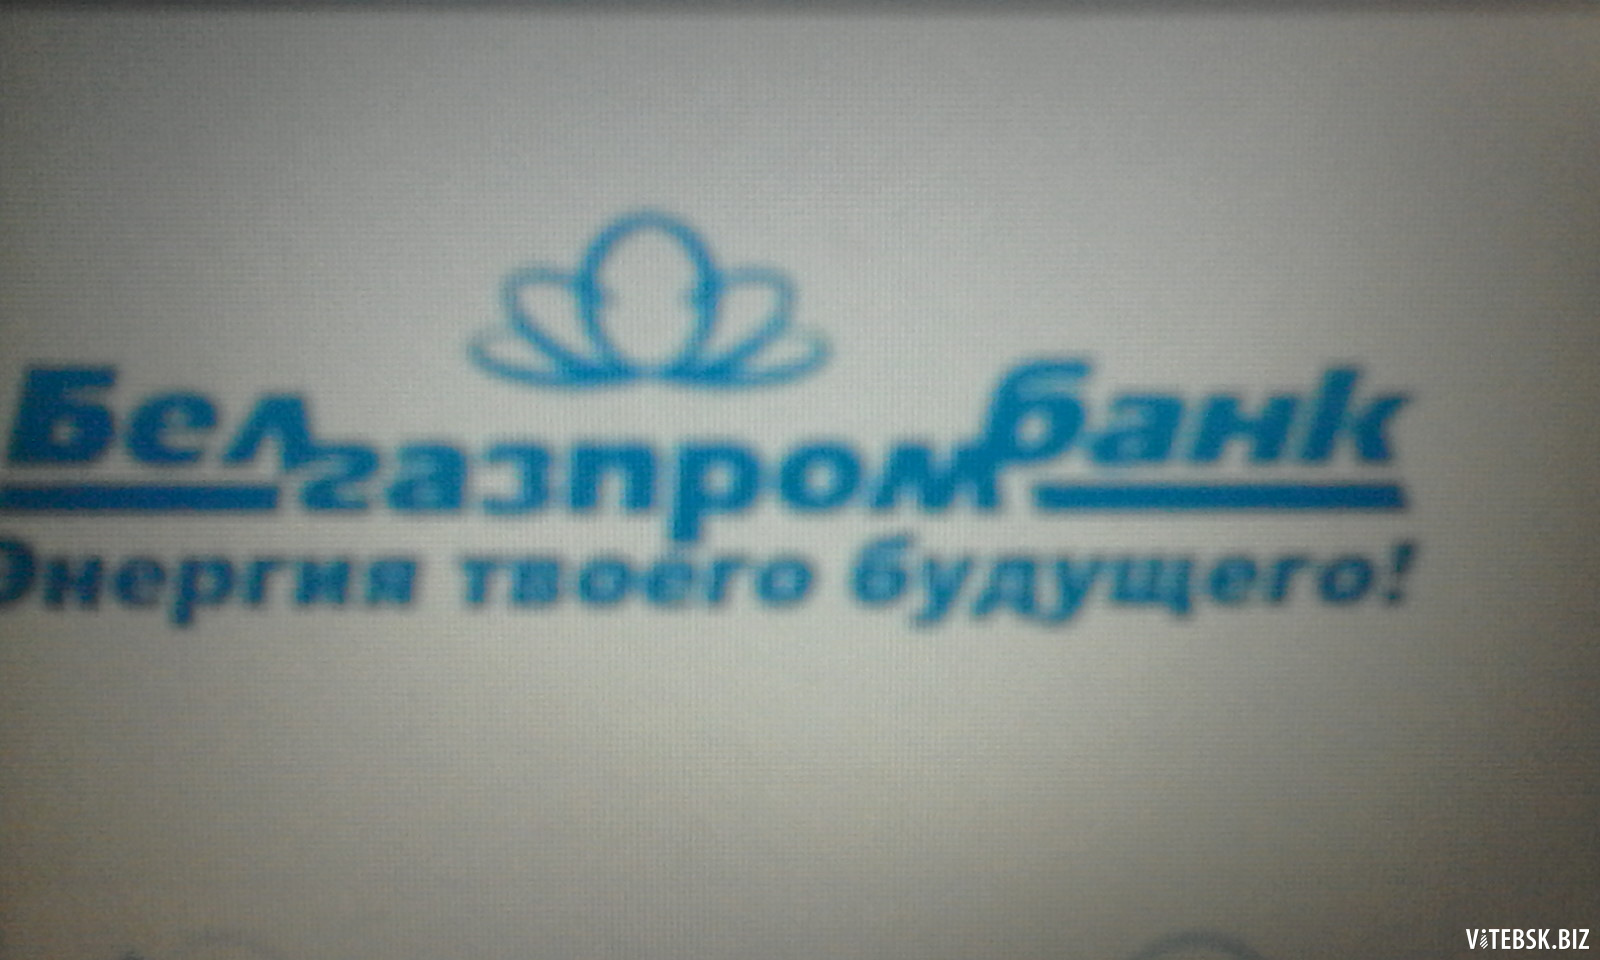 Белгазпромбанк логотип. Карта Белгазпромбанка. Белгазпромбанк печать. Белгазпромбанк синяя печать.